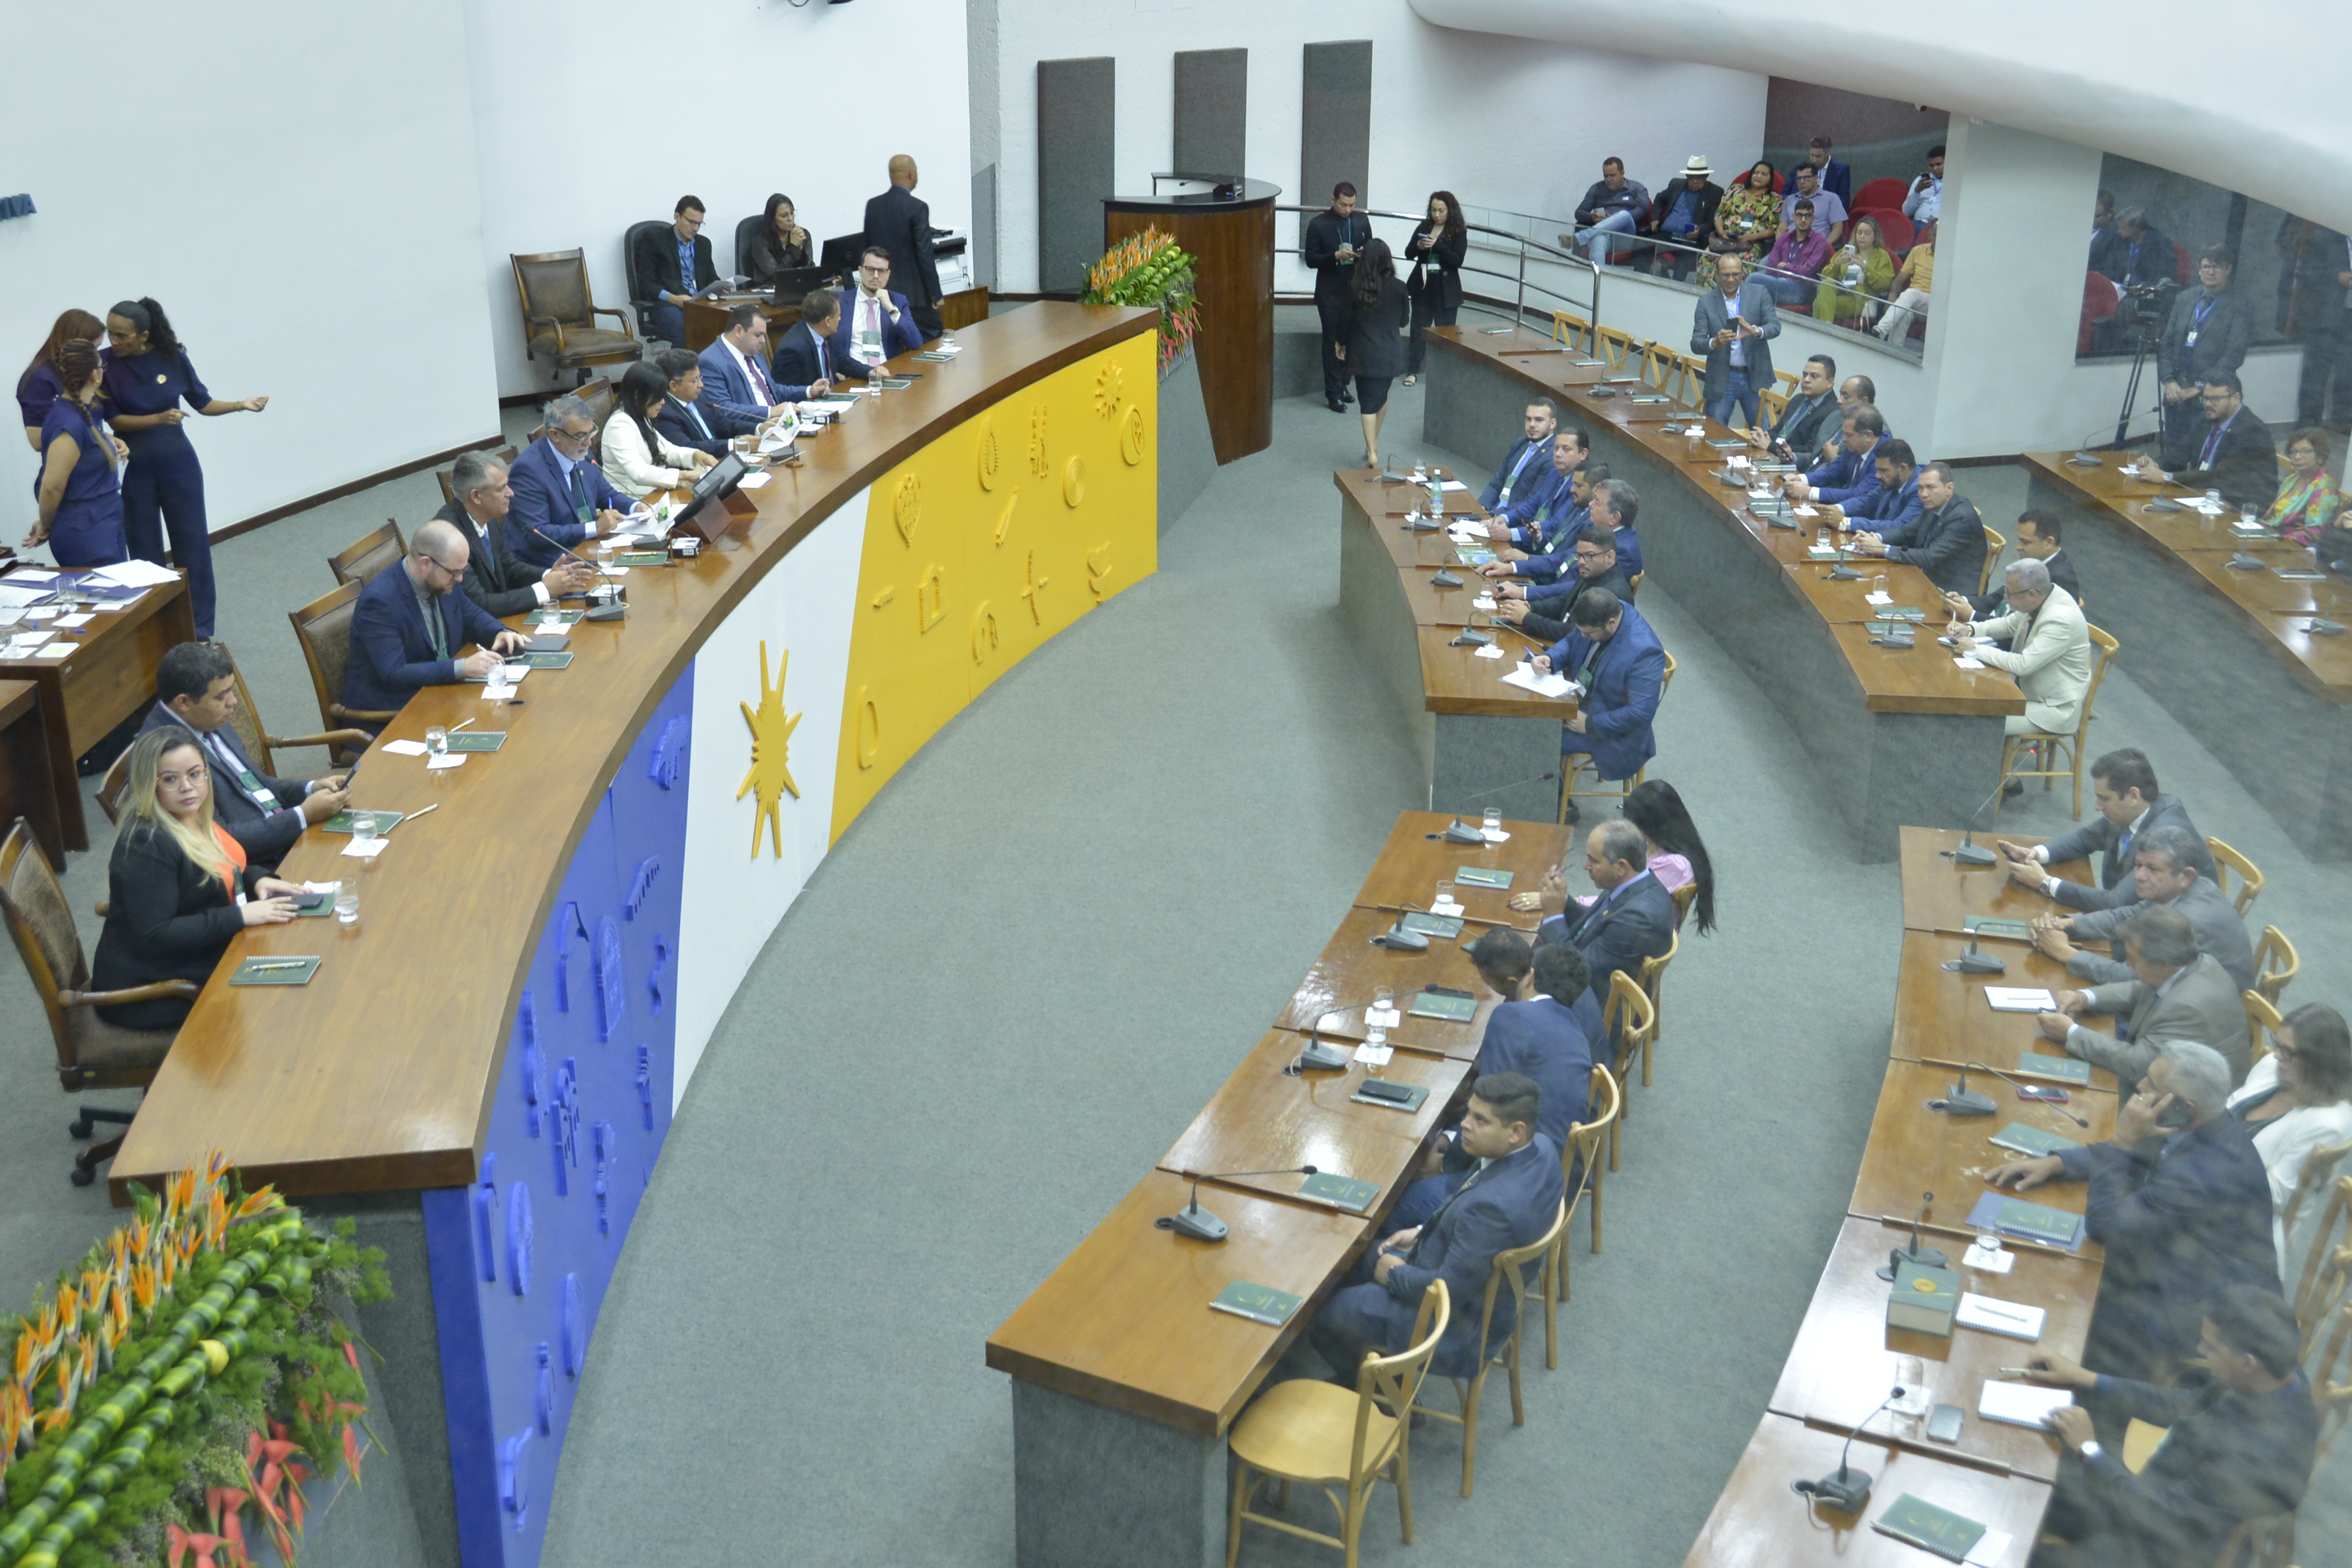 Assembleia Legislativa do Estado do Maranhão - 'Diário da Manhã